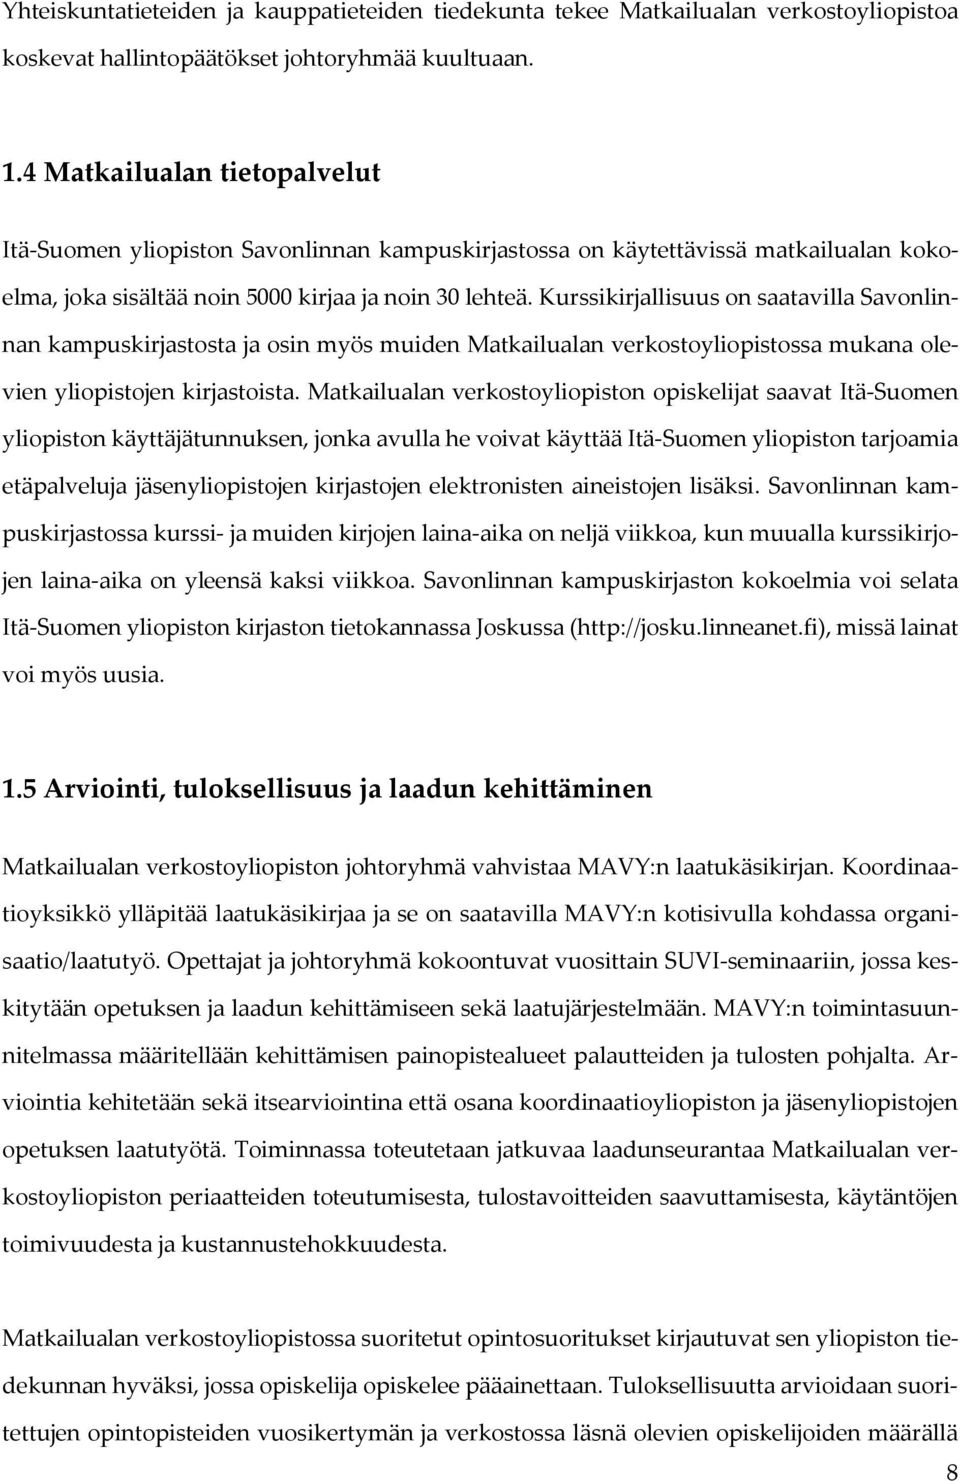 Kurssikirjallisuus on saatavilla Savonlinnan kampuskirjastosta ja osin myös muiden Matkailualan verkostoyliopistossa mukana olevien yliopistojen kirjastoista.